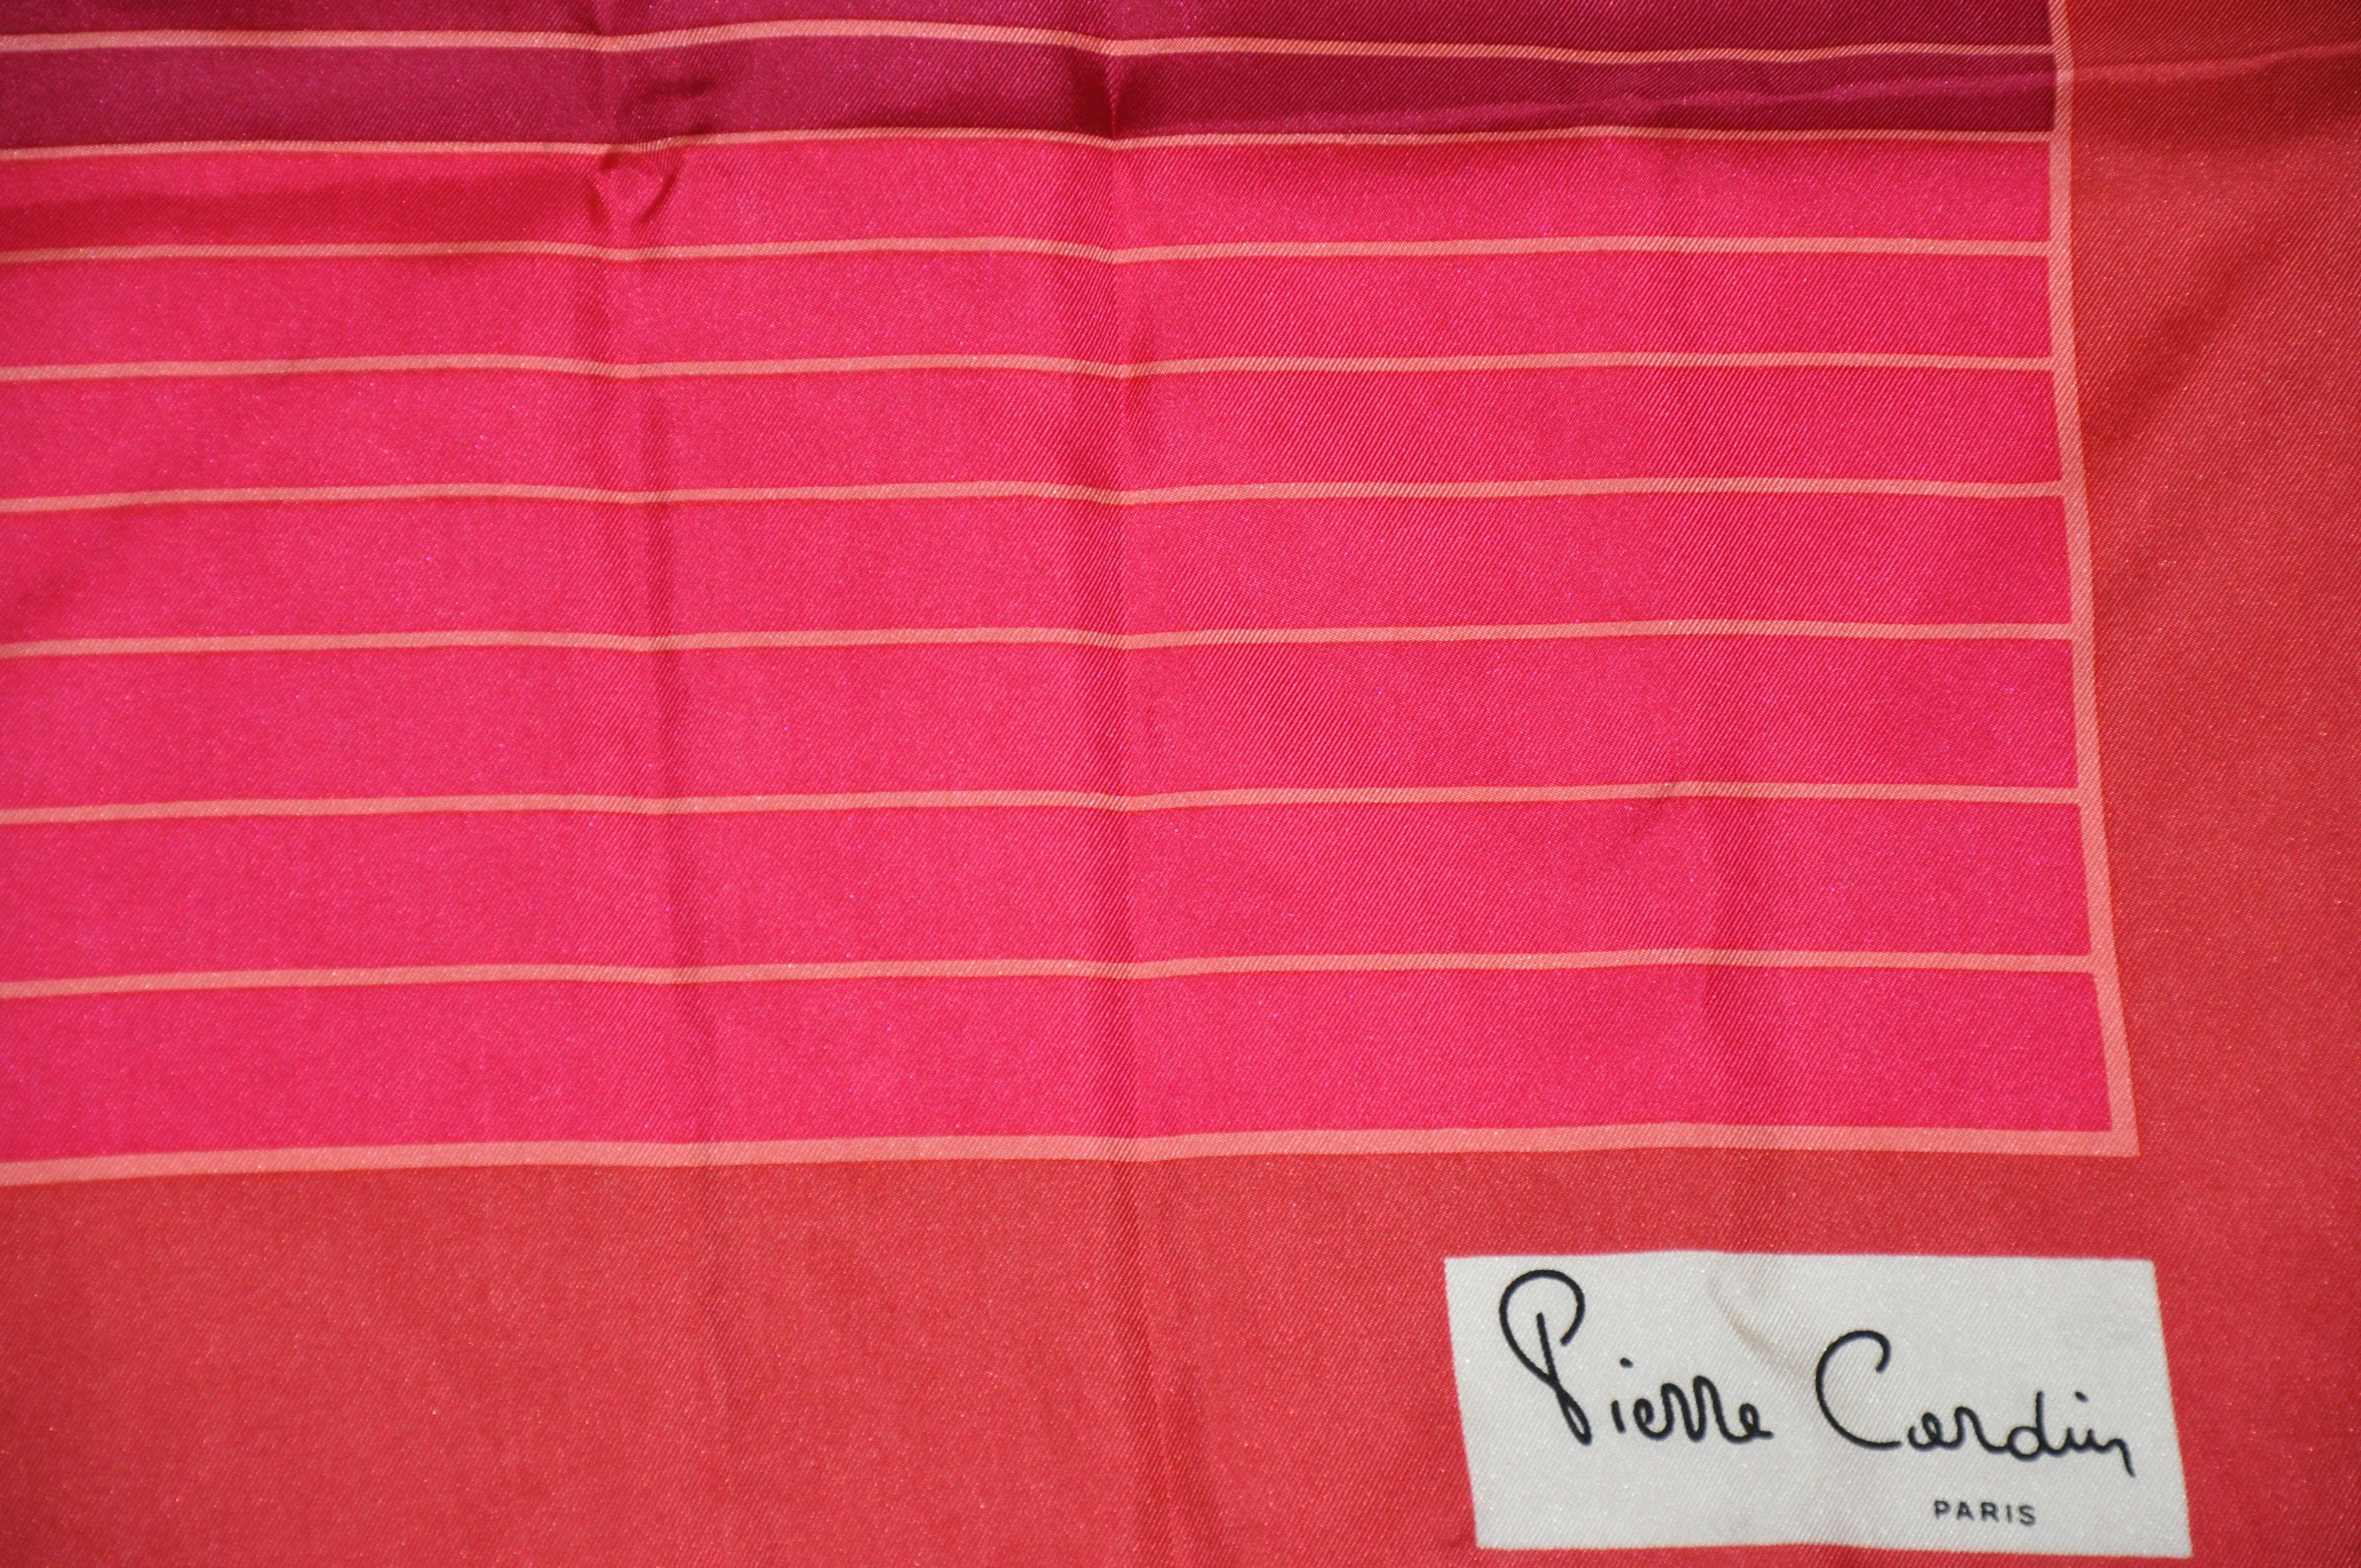        Pierre Cardin skurrilen Seidenschal in Schattierungen von rubinroten gestreiften Schal mit handgerollten Kanten akzentuiert, misst 30 cm x 30 cm. Hergestellt in Frankreich.